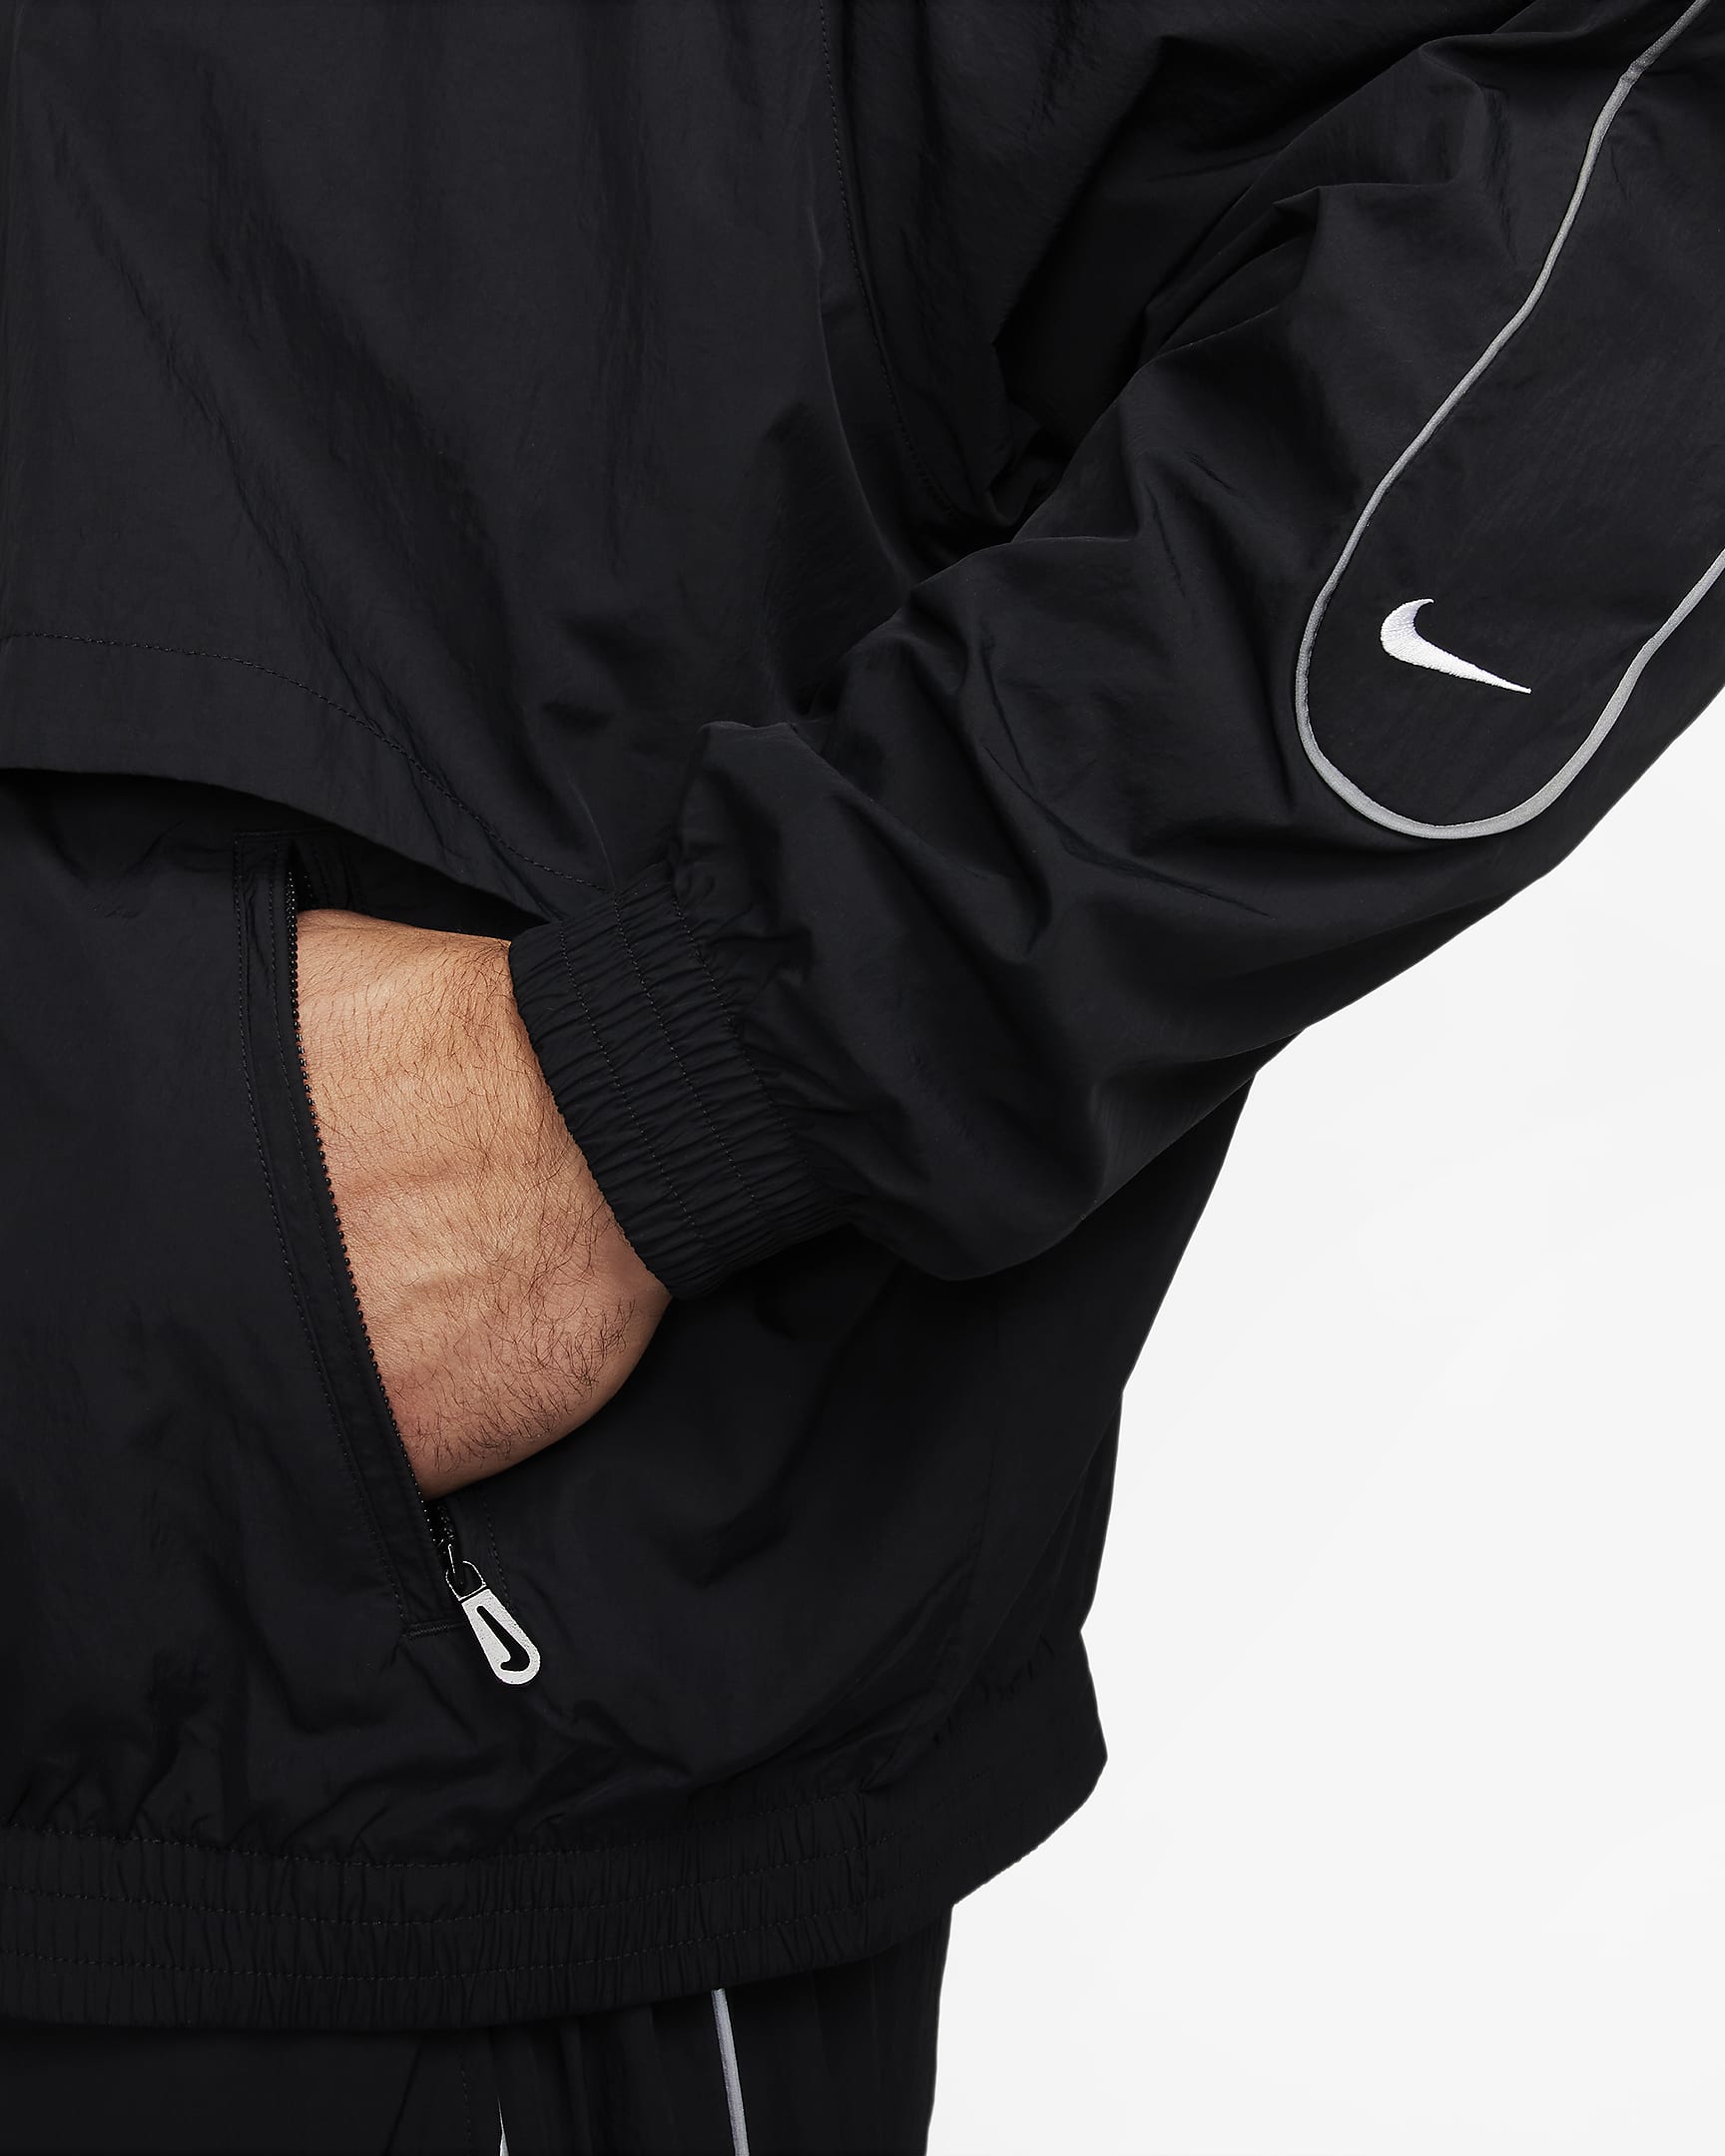 Nike Sportswear Solo Swoosh Men's Woven Track Jacket. Nike.com